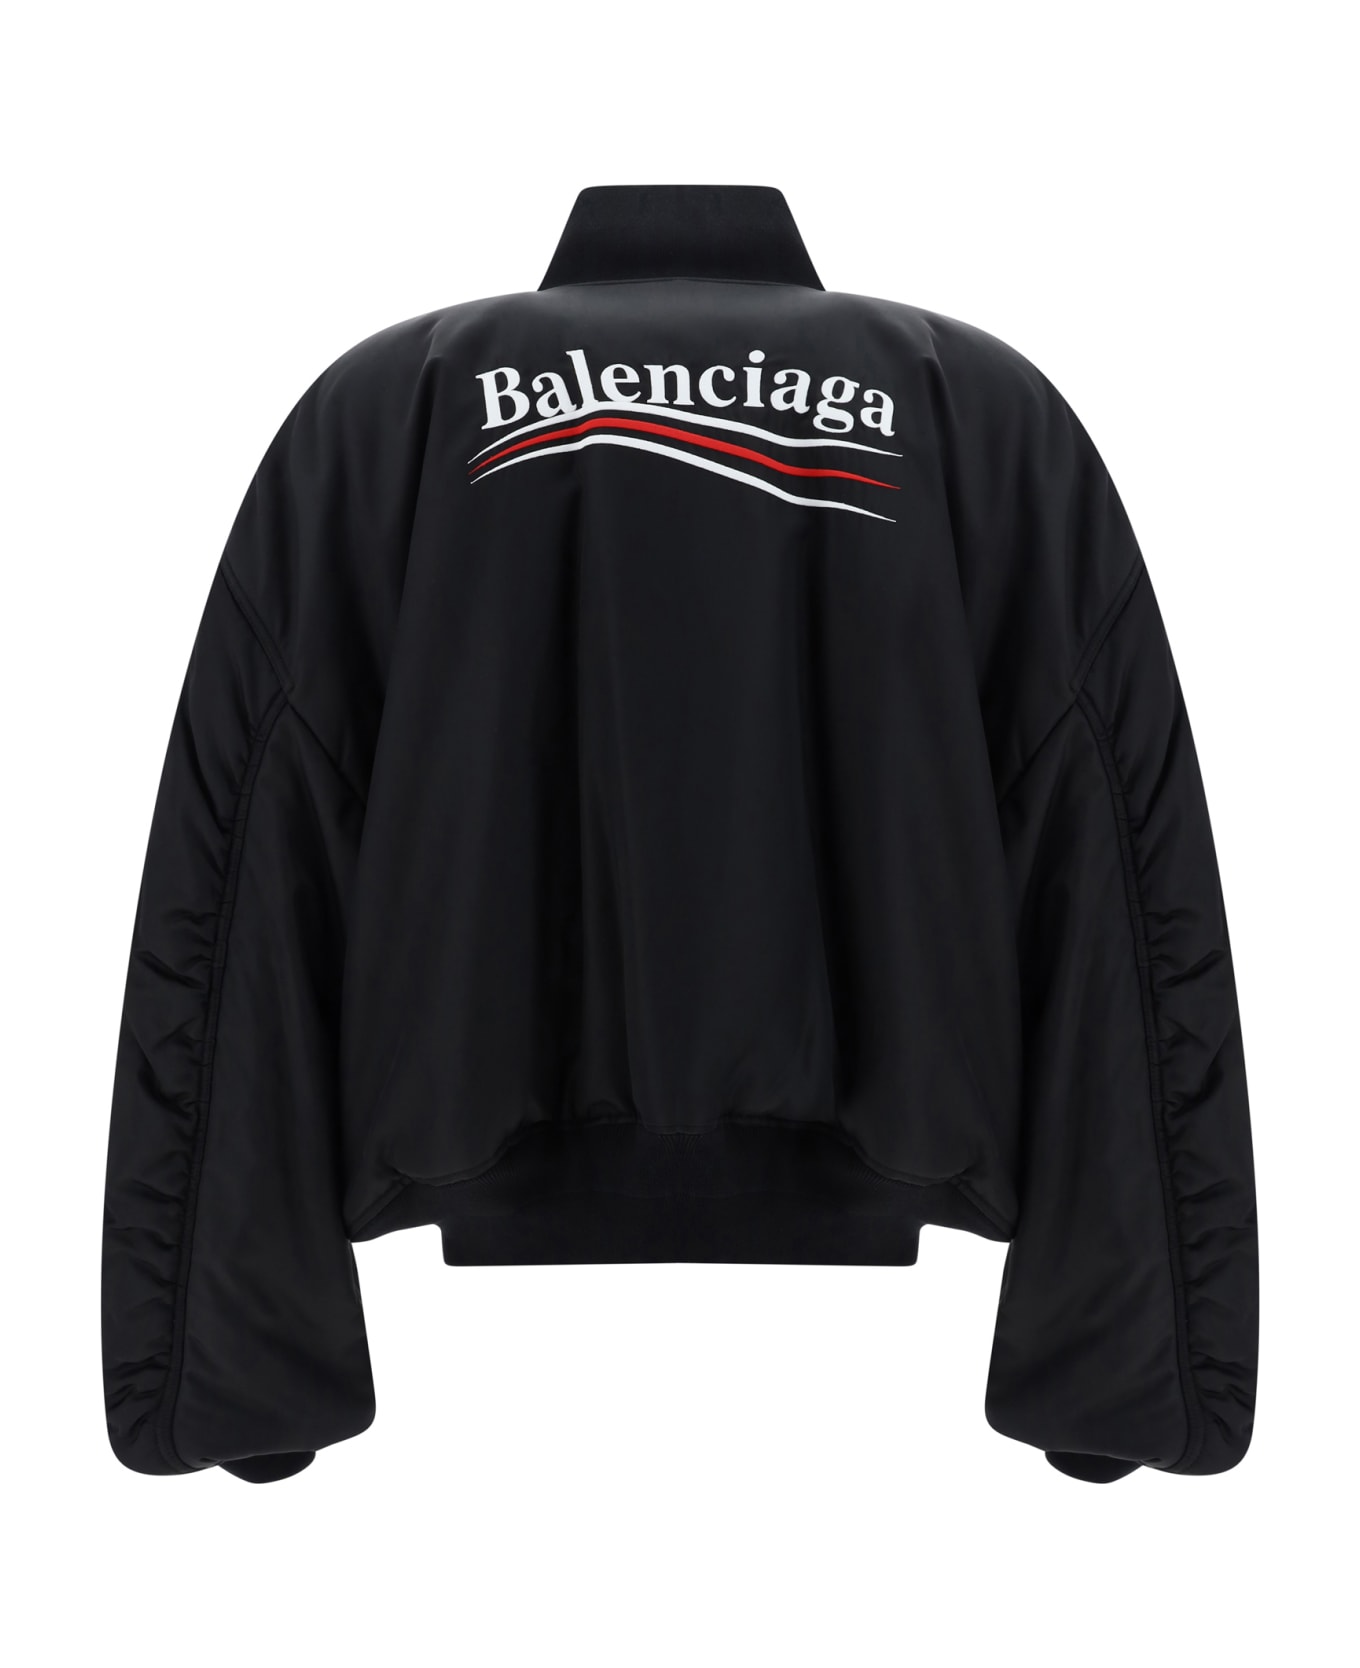 Balenciaga Varsity Bomber Jacket - Black ジャケット